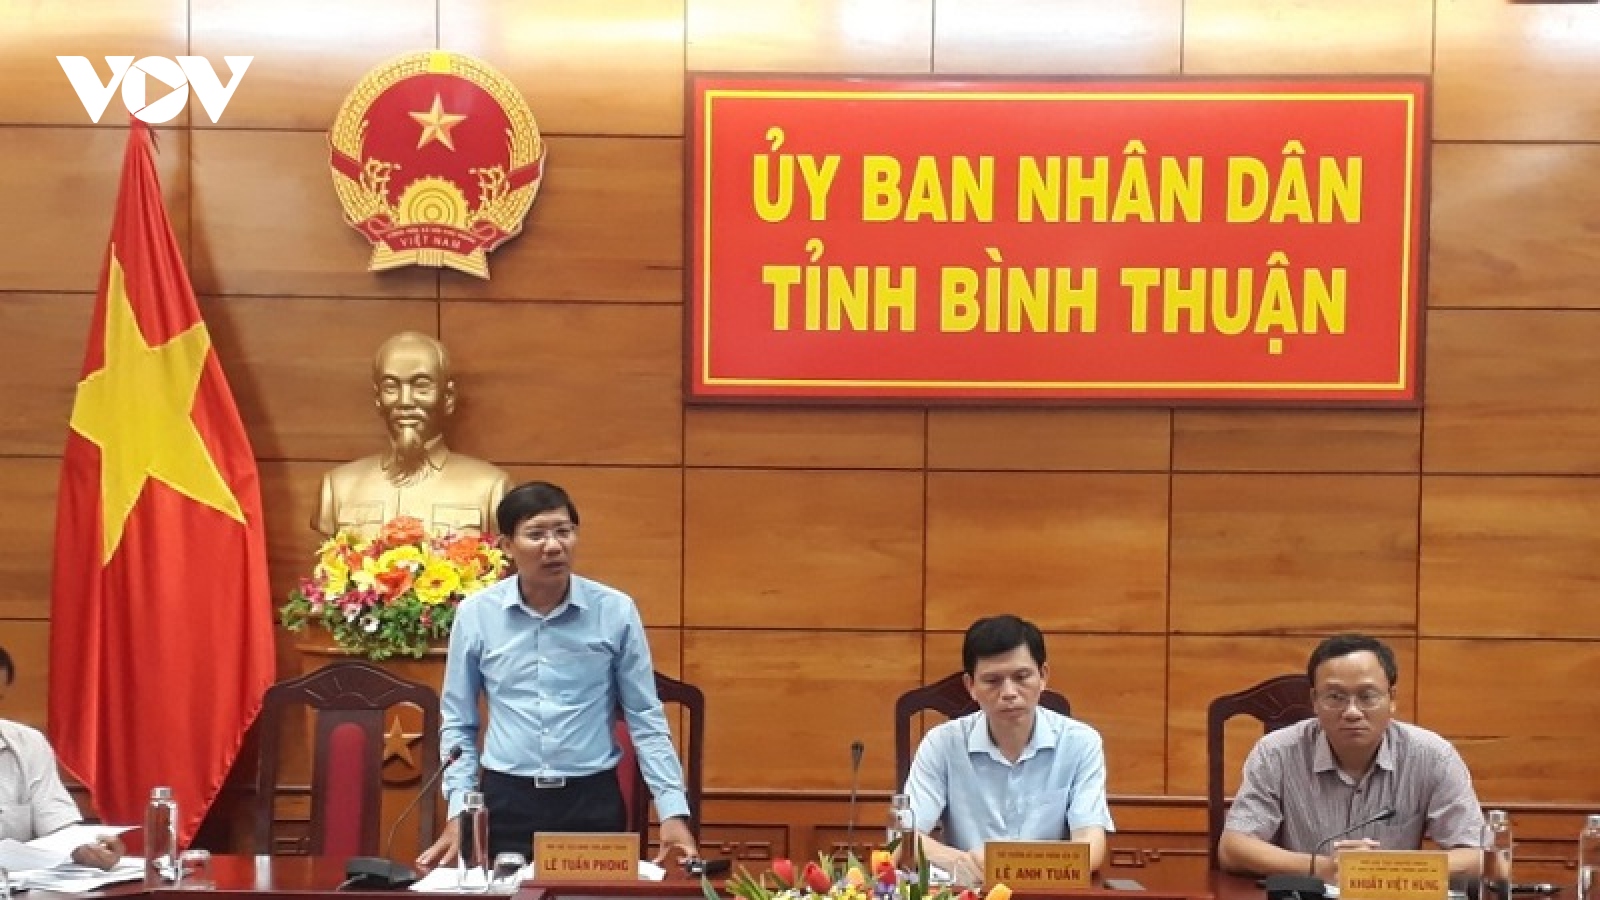 Ông Lê Tuấn Phong được bầu làm Phó Bí thư Tỉnh ủy Bình Thuận